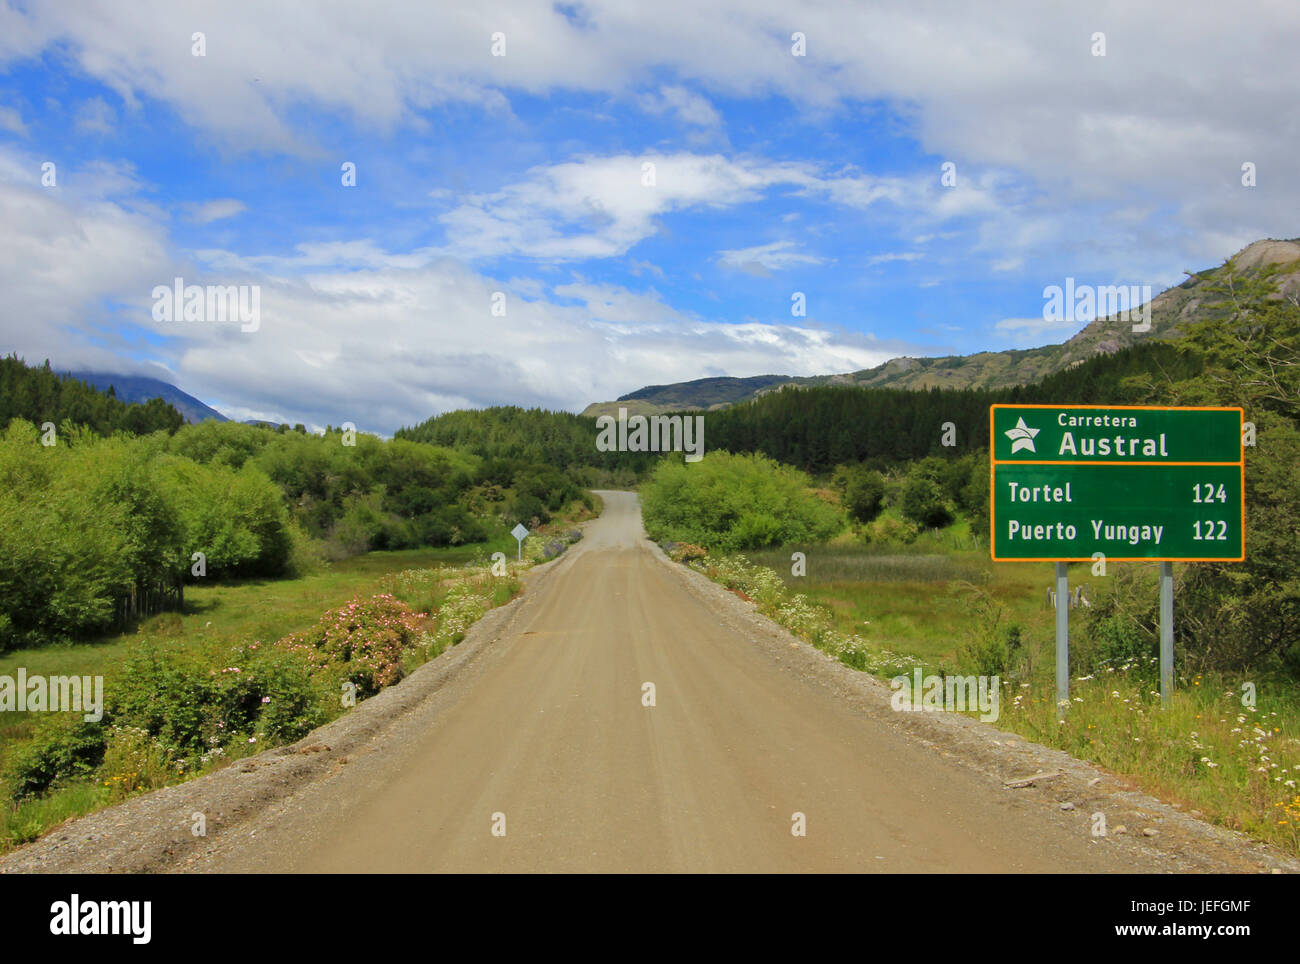 Carretera Austral Autobahn, Ruta 7, mit Schild, Patagonien Chile Stockfoto